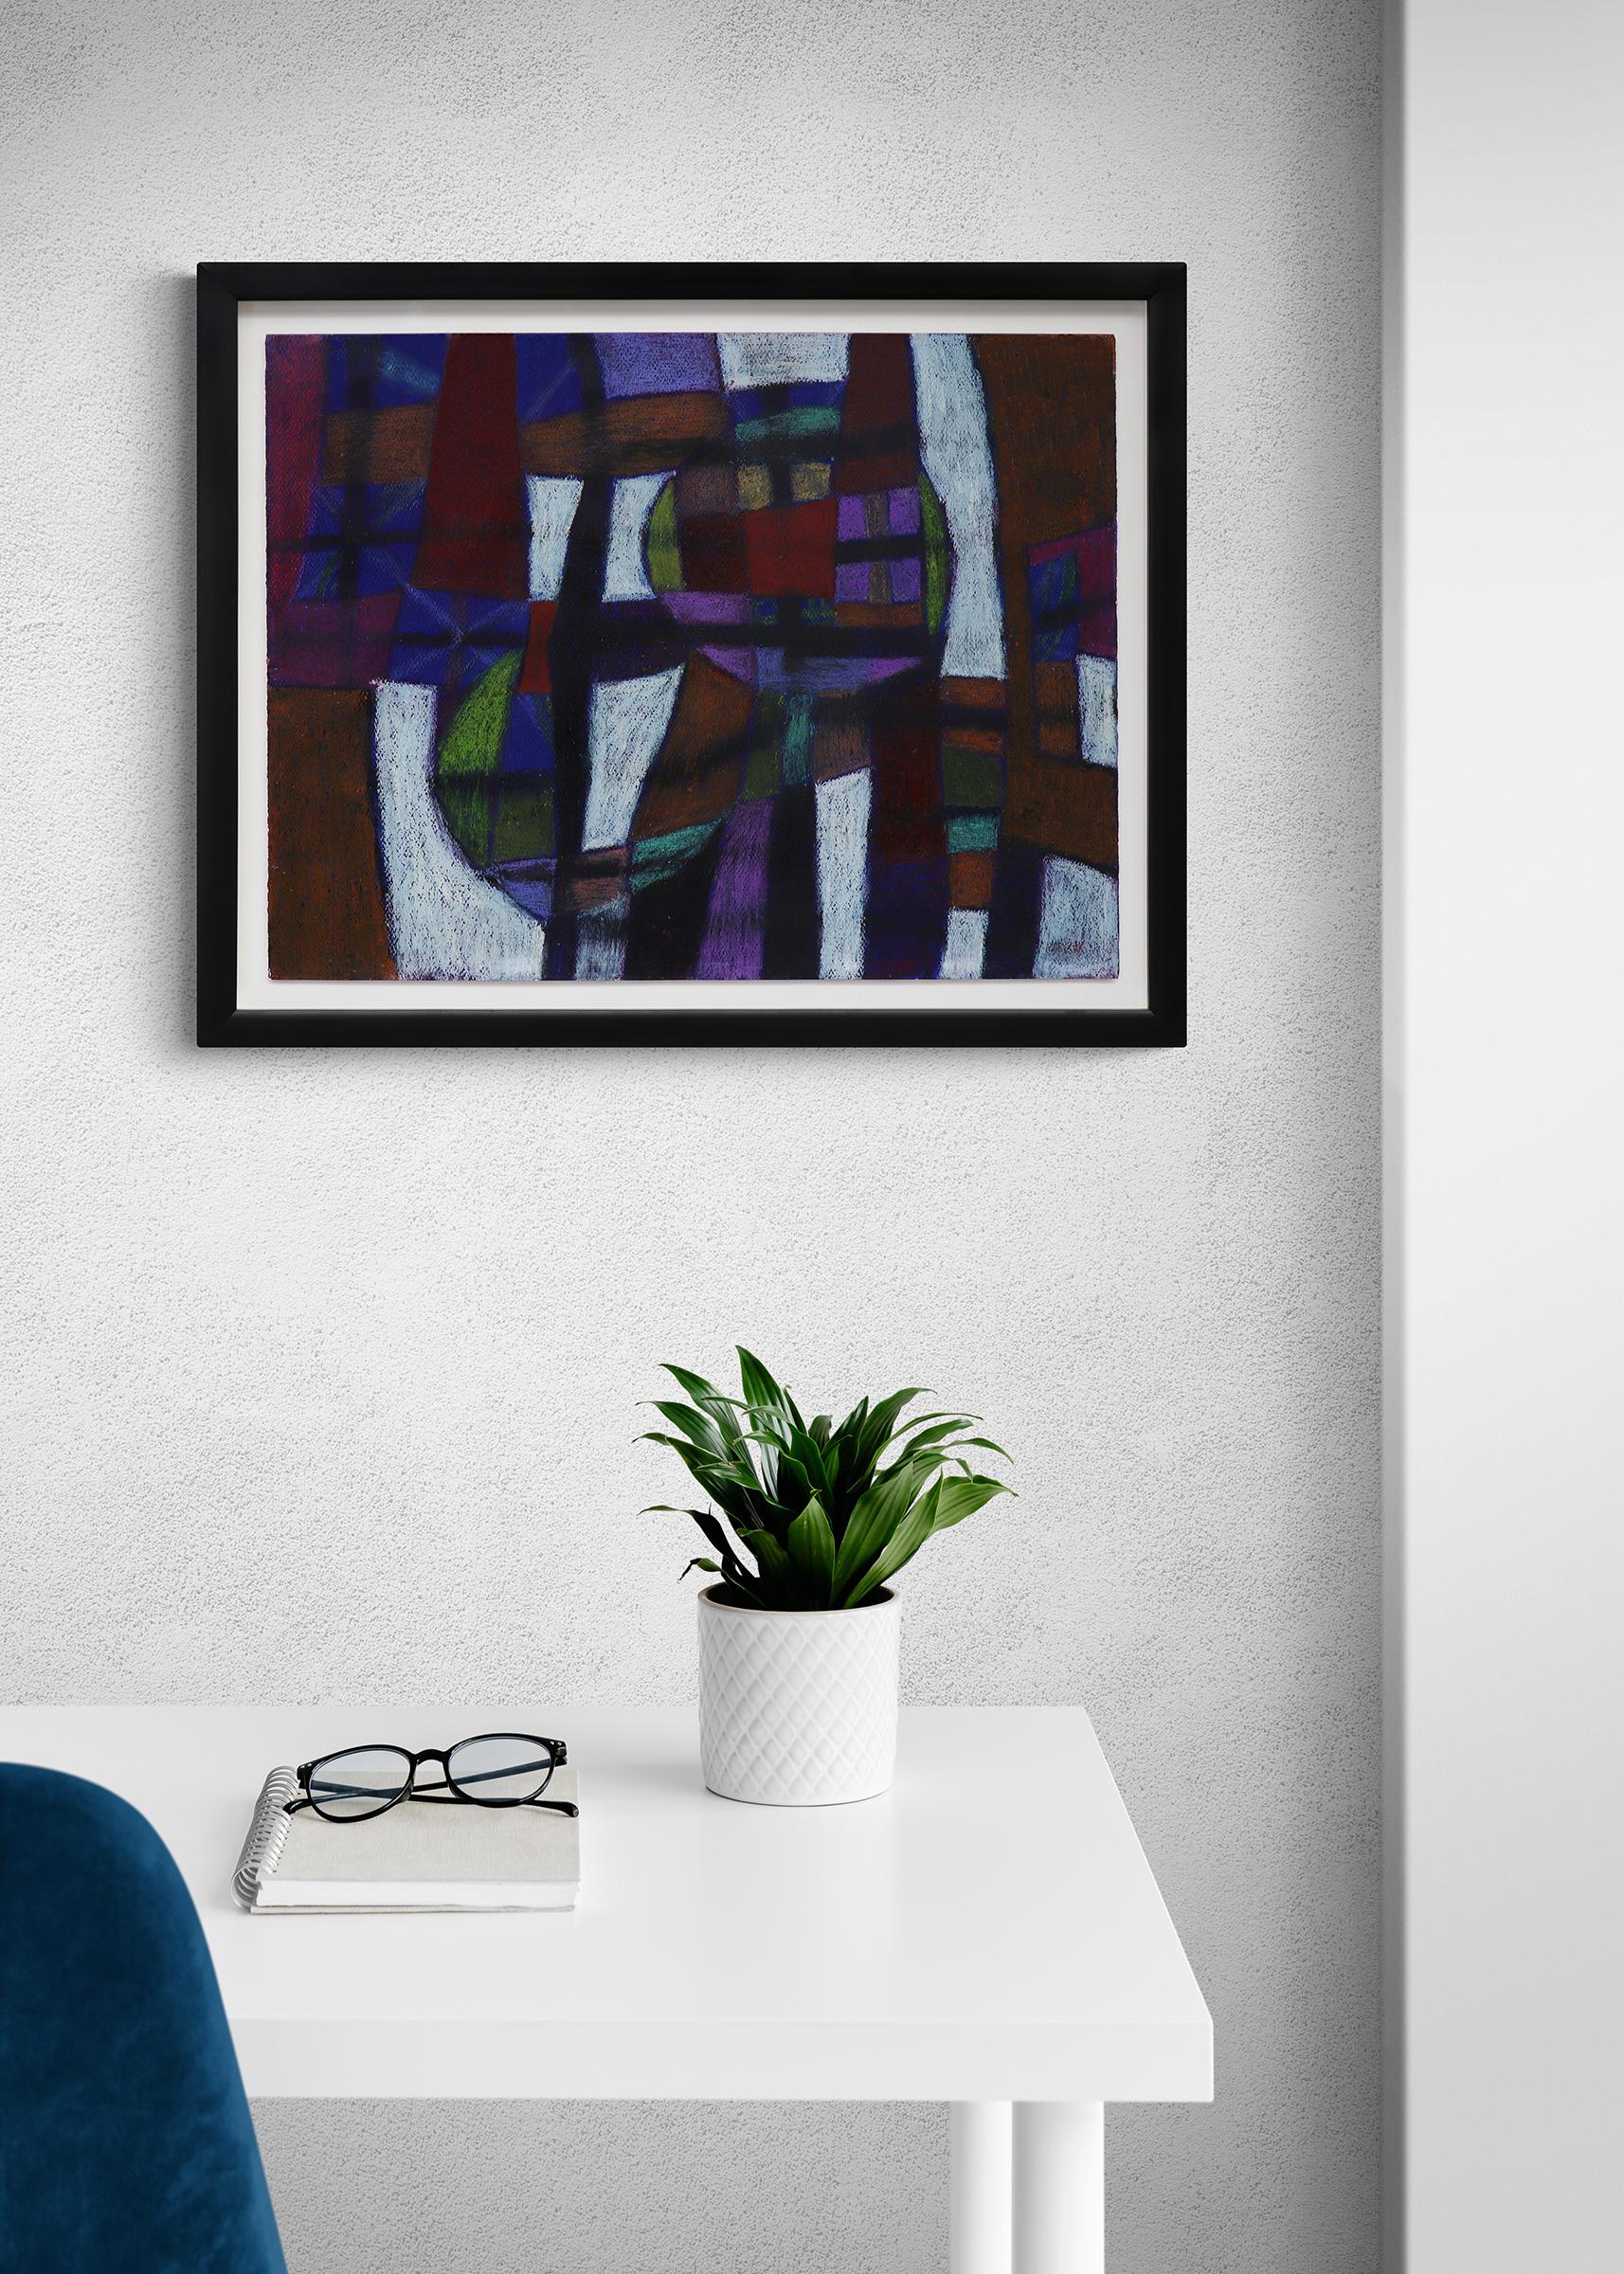 Crayon brossé sur acrylique sur papier d'Edward Marecak (1919-1993) intitulé Untitled #26. Peinture abstraite géométrique dans des couleurs noires, violettes et bleues.  Présenté dans un cadre personnalisé avec tous les matériaux d'archives, les